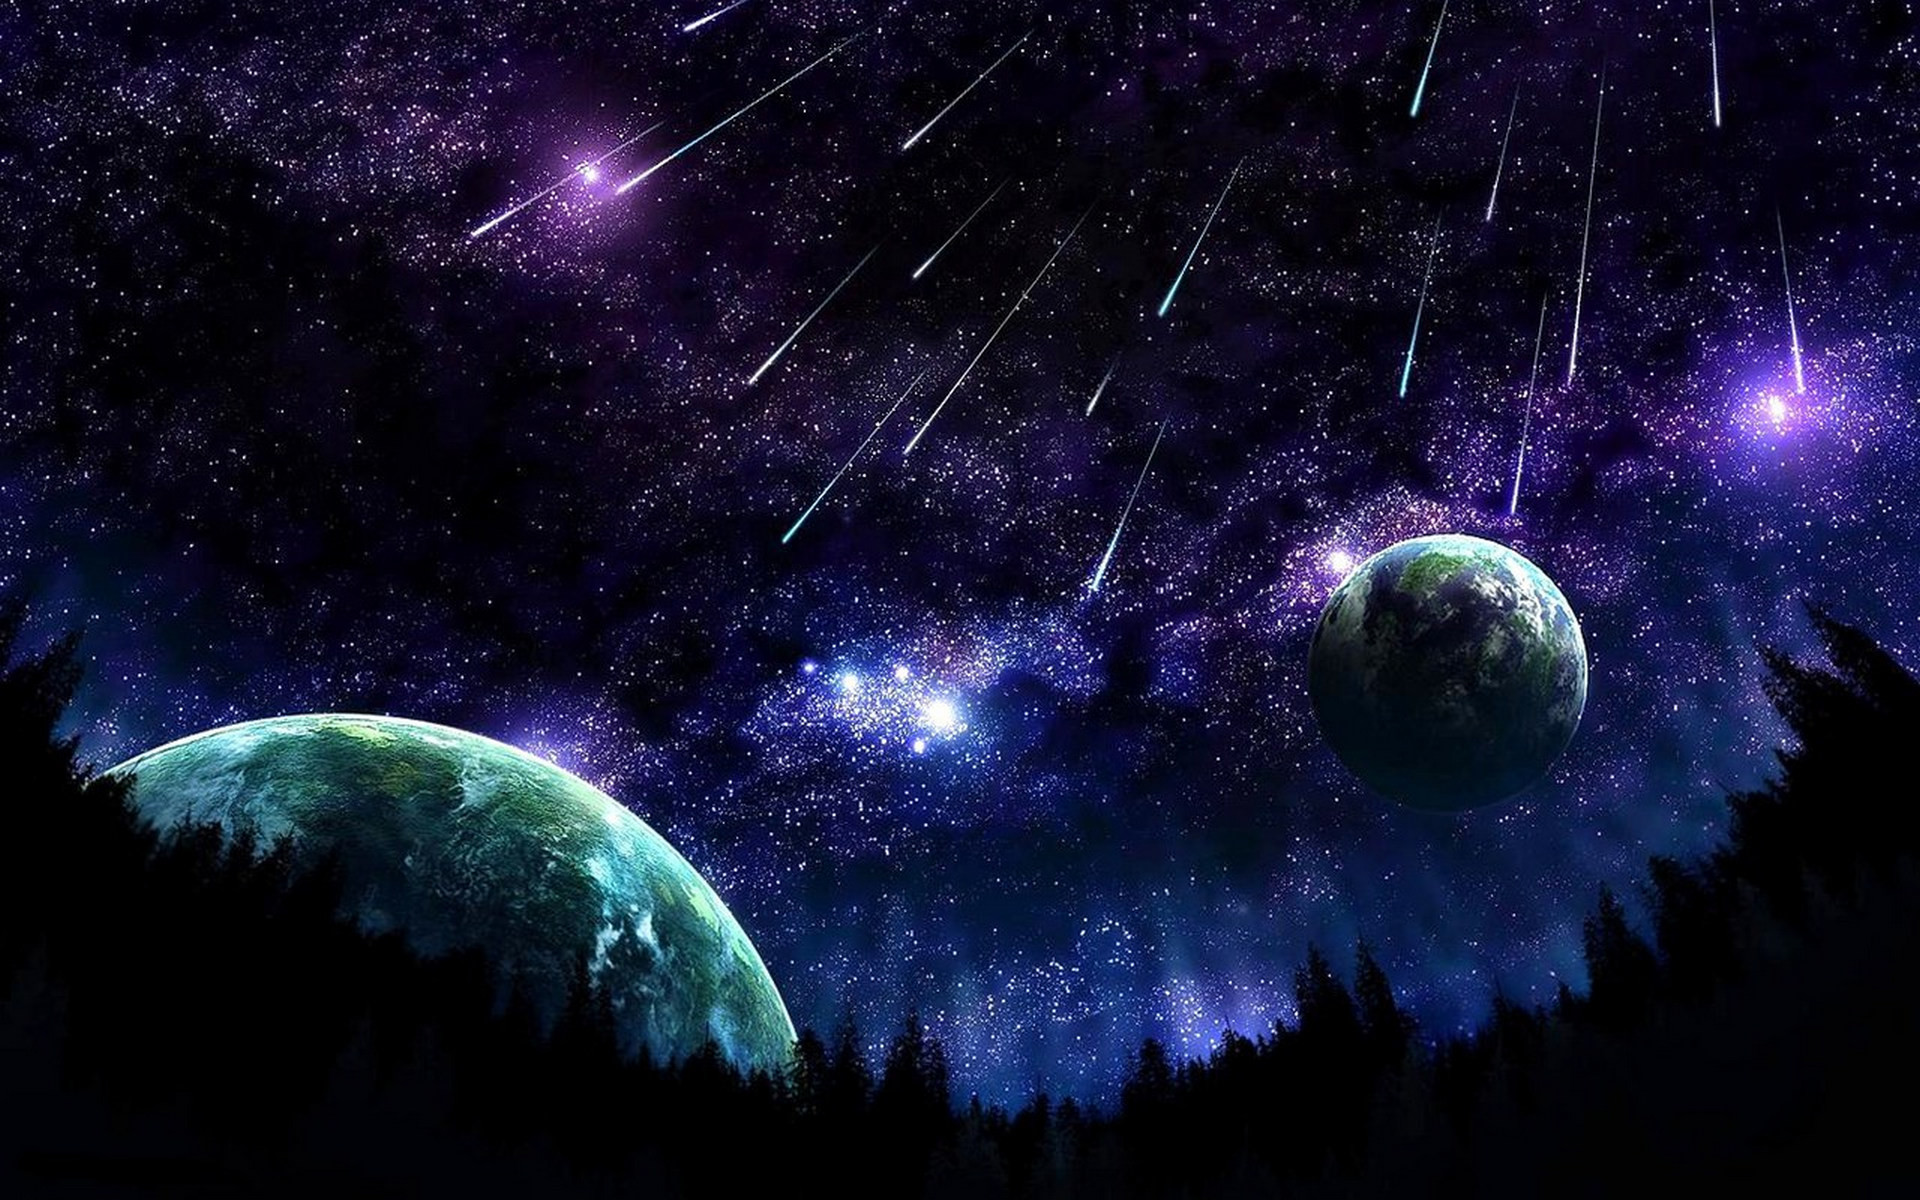 Đêm trông thật đẹp khi có những cú meteor rực rỡ vượt qua bầu trời đêm. Hãy để trái tim bạn đắm chìm trong vũ trụ bao la qua những tia sáng này. Đừng quên thưởng thức những hình ảnh điện ảnh của vũ trụ để khám phá thêm đến sự lớn lao và bí mật của nó!